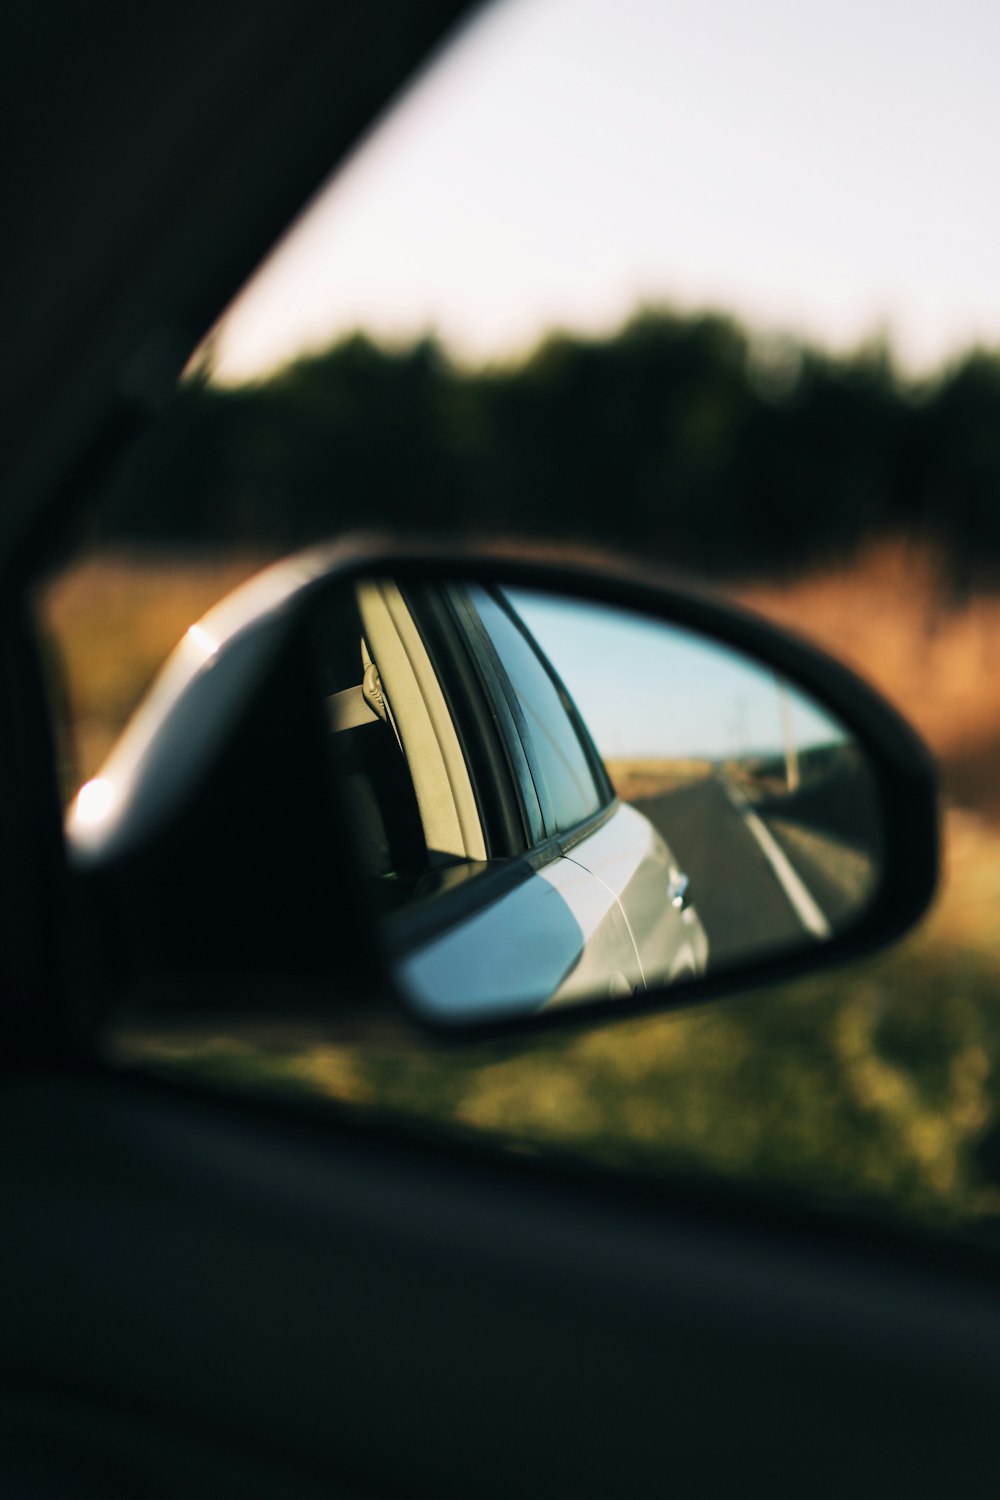 espelho lateral do carro preto refletindo árvores verdes durante o dia